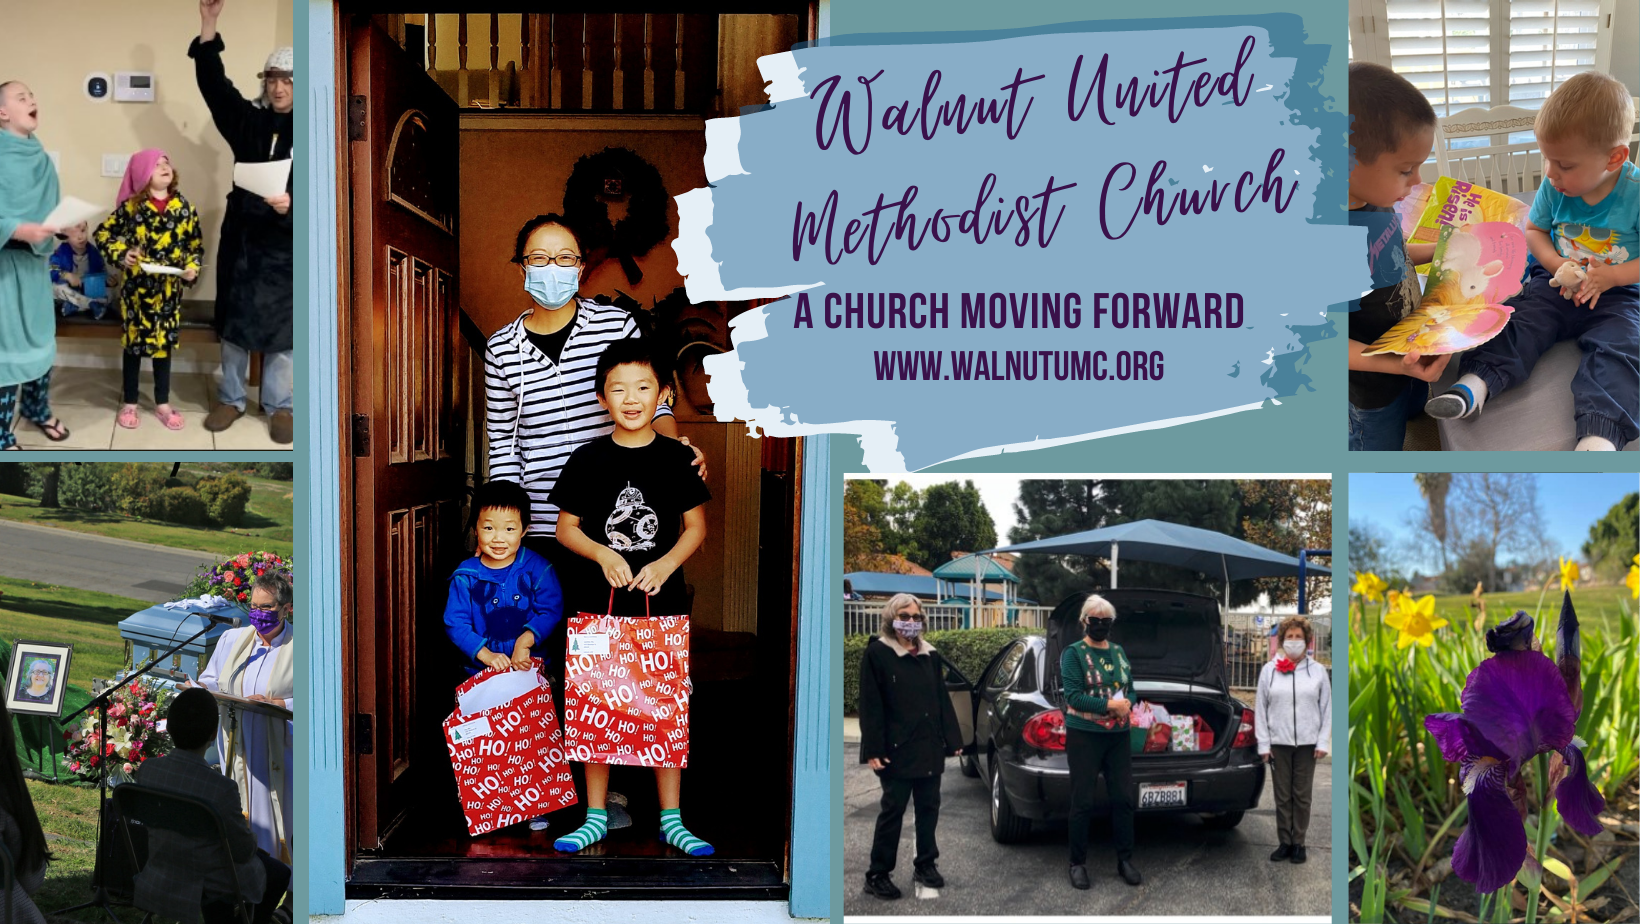 Walnut United Methodist Church